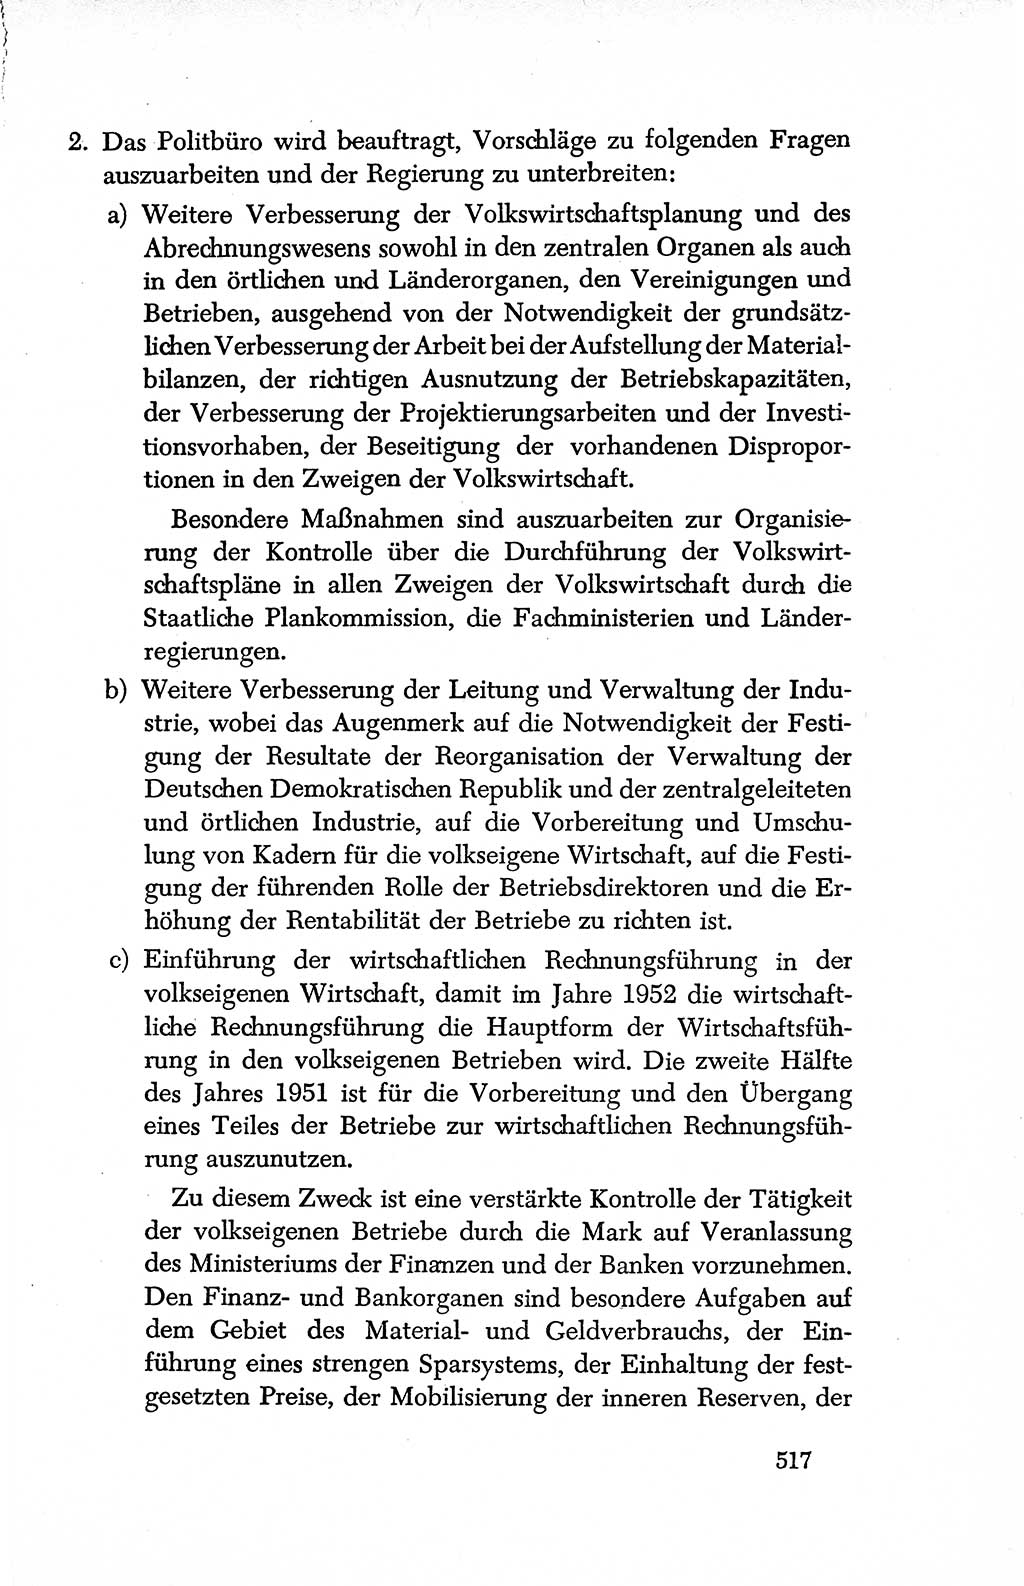 Dokumente der Sozialistischen Einheitspartei Deutschlands (SED) [Deutsche Demokratische Republik (DDR)] 1950-1952, Seite 517 (Dok. SED DDR 1950-1952, S. 517)